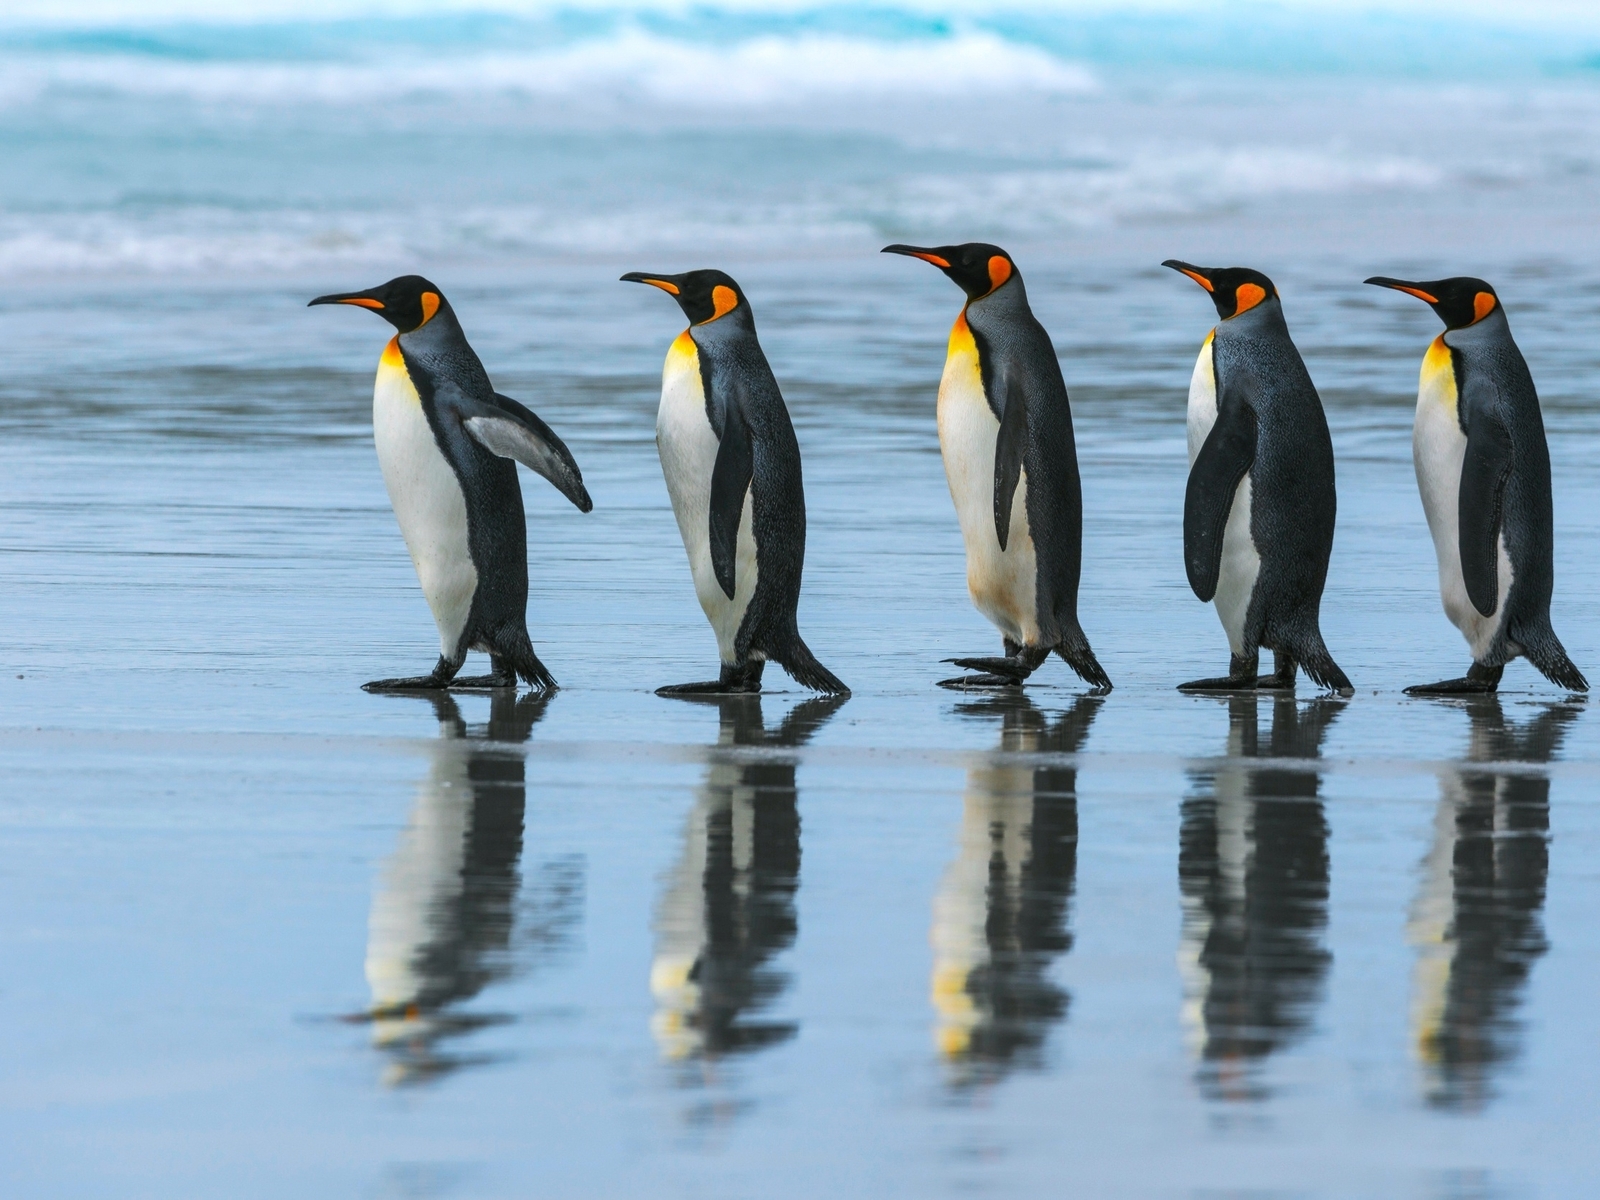 Картинка: Королевский пингвин, идут, пятеро, отражение, окрас, яркий, океан